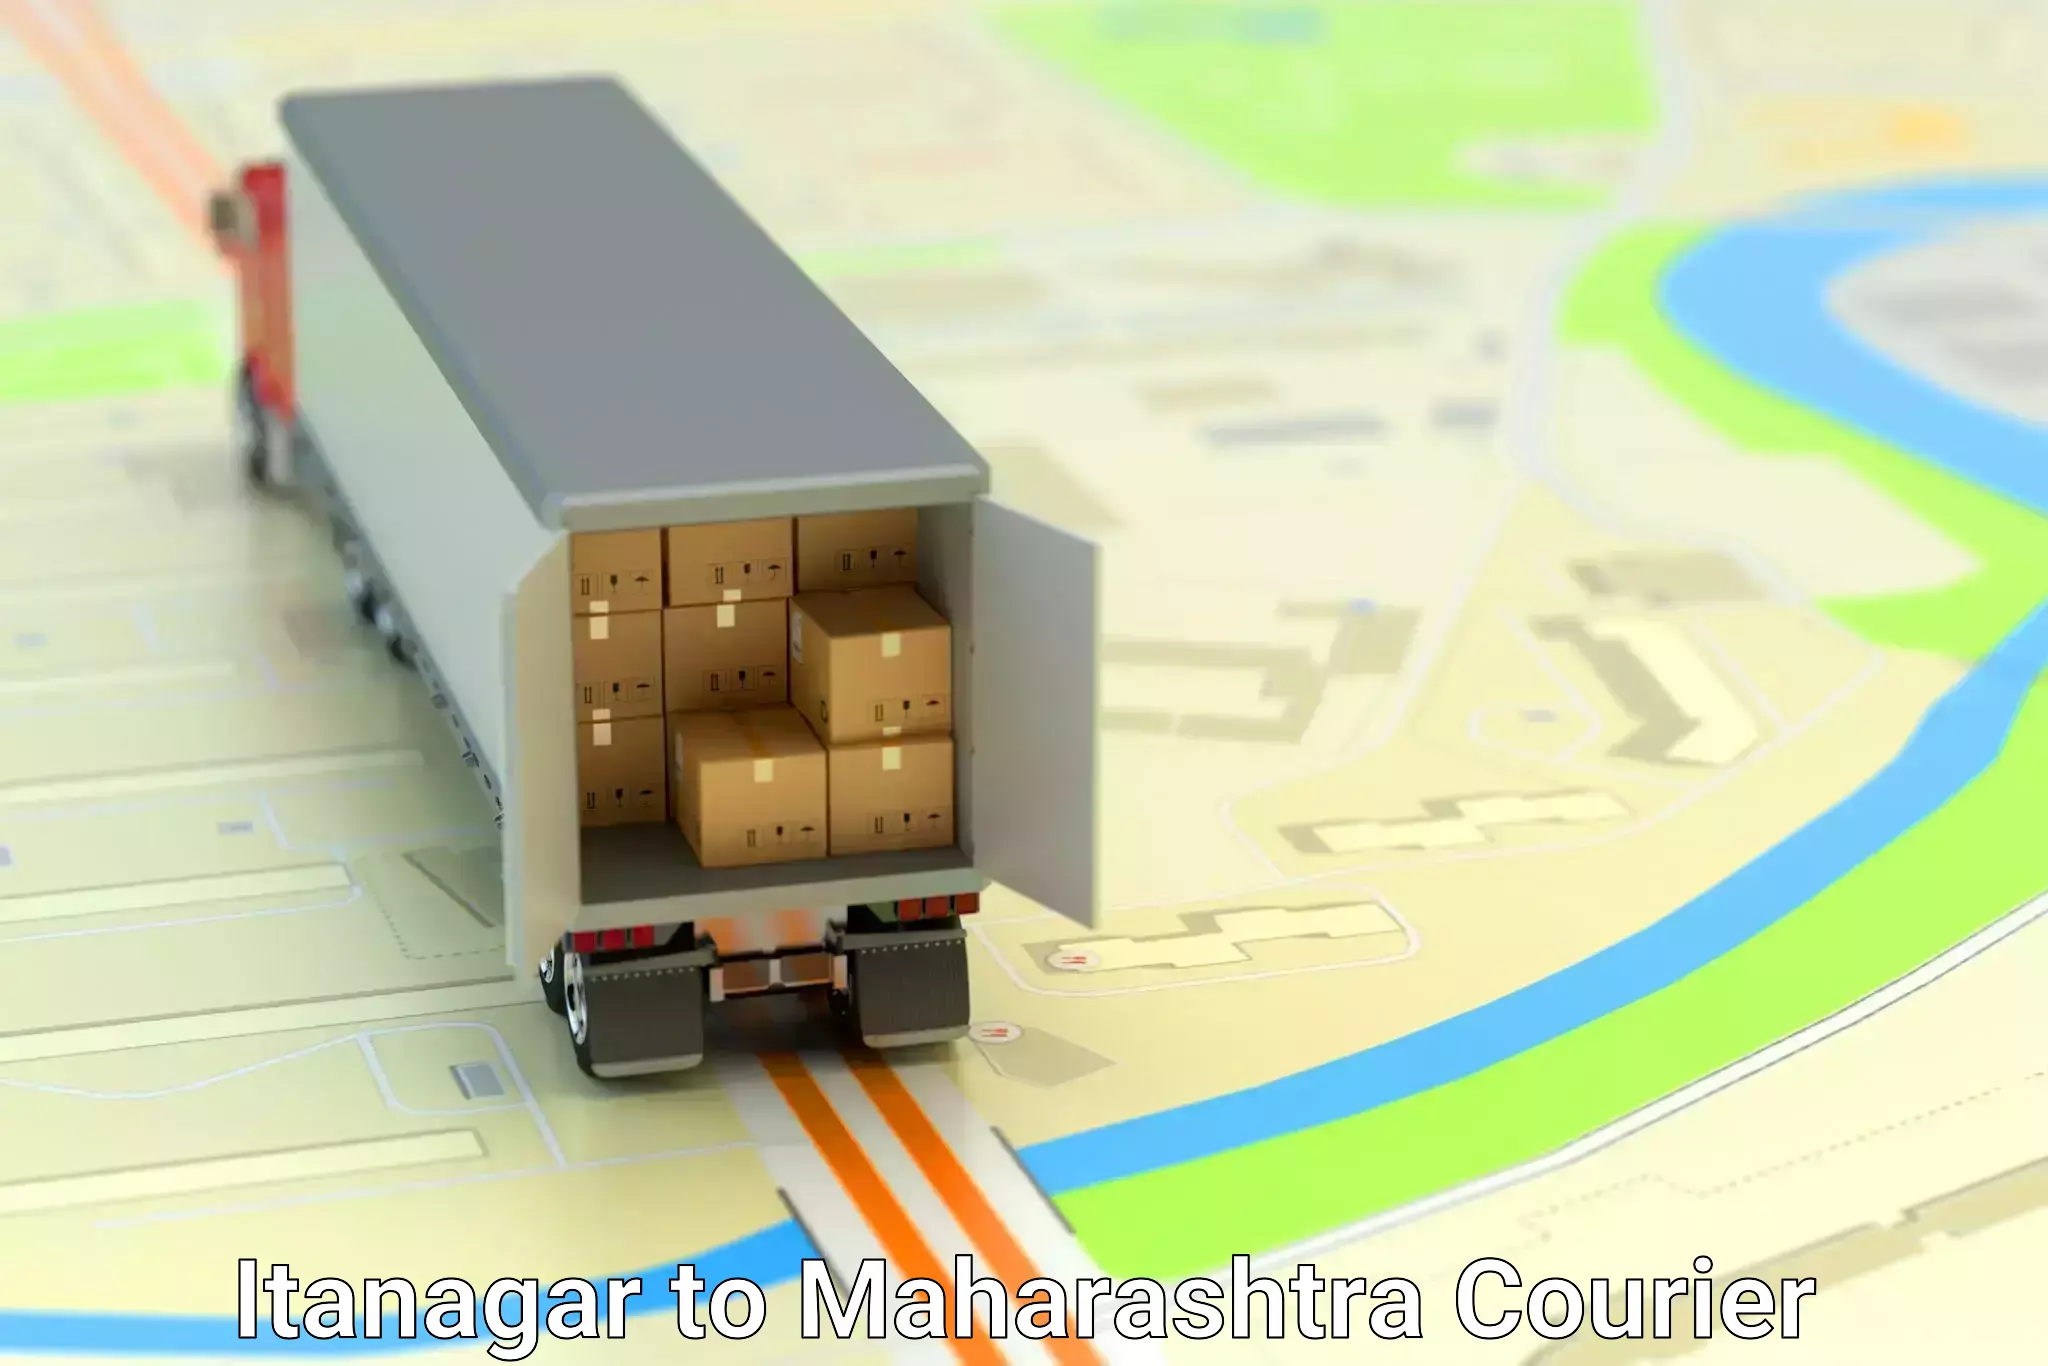 Logistics service provider Itanagar to Maharashtra